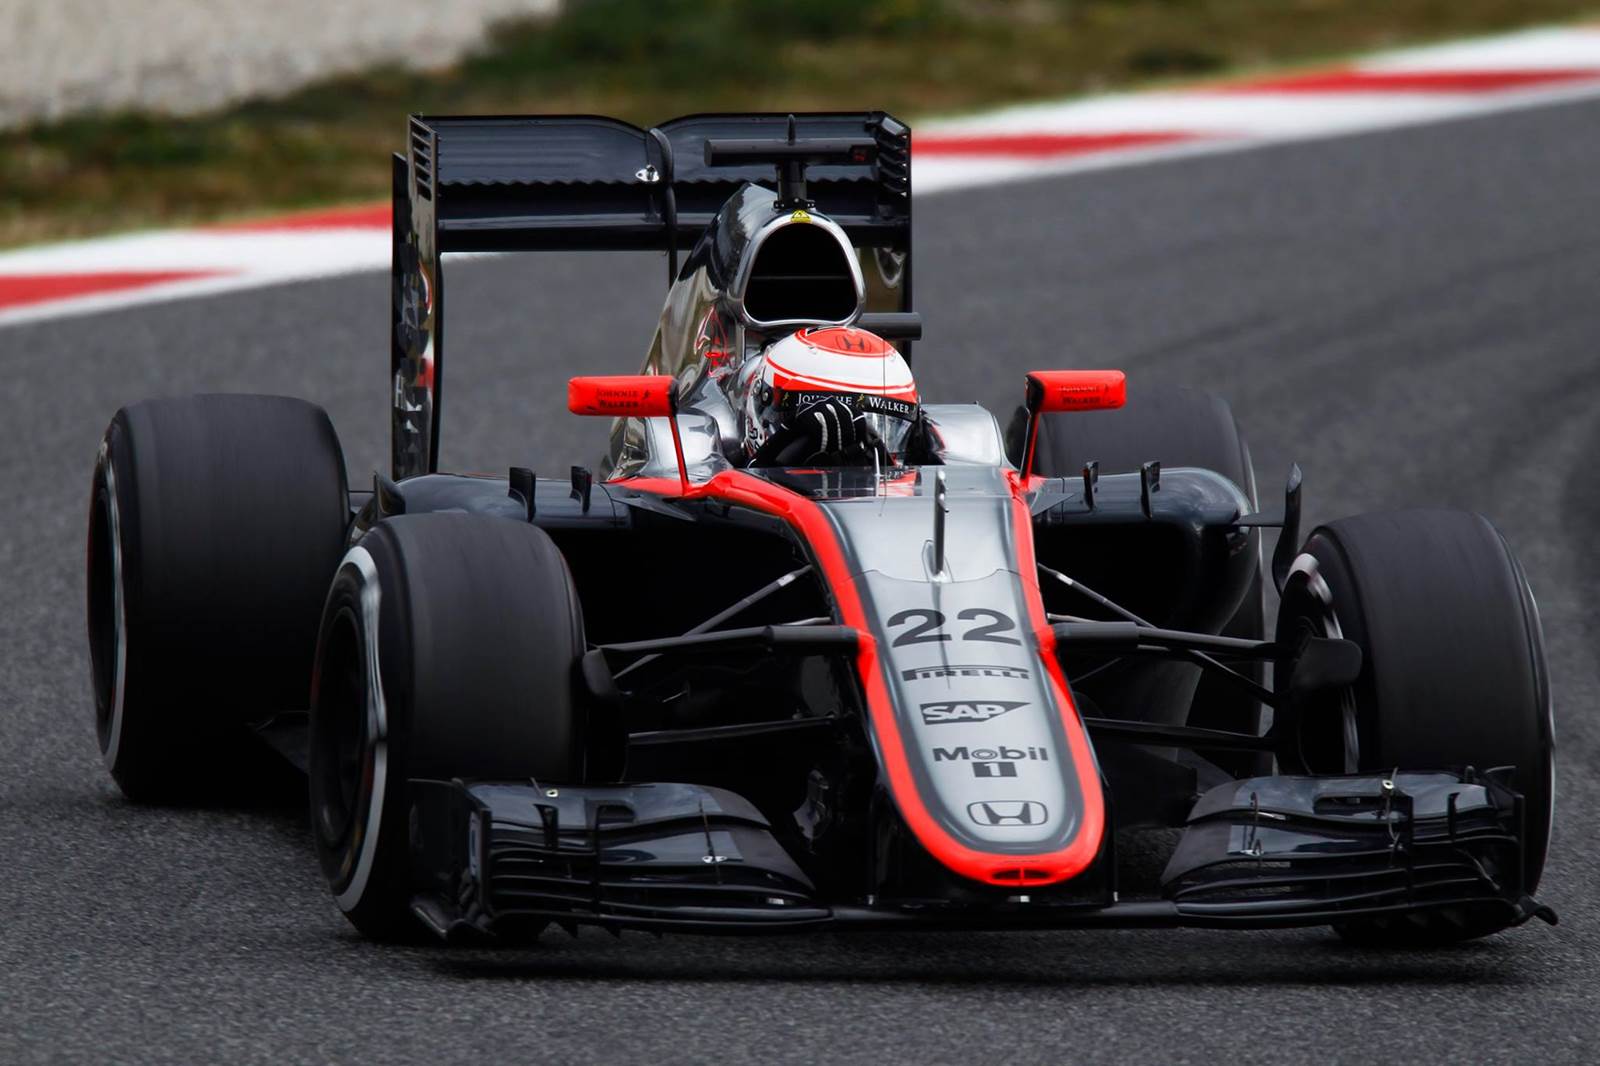 McLaren-Honda MP-4/30 - Button